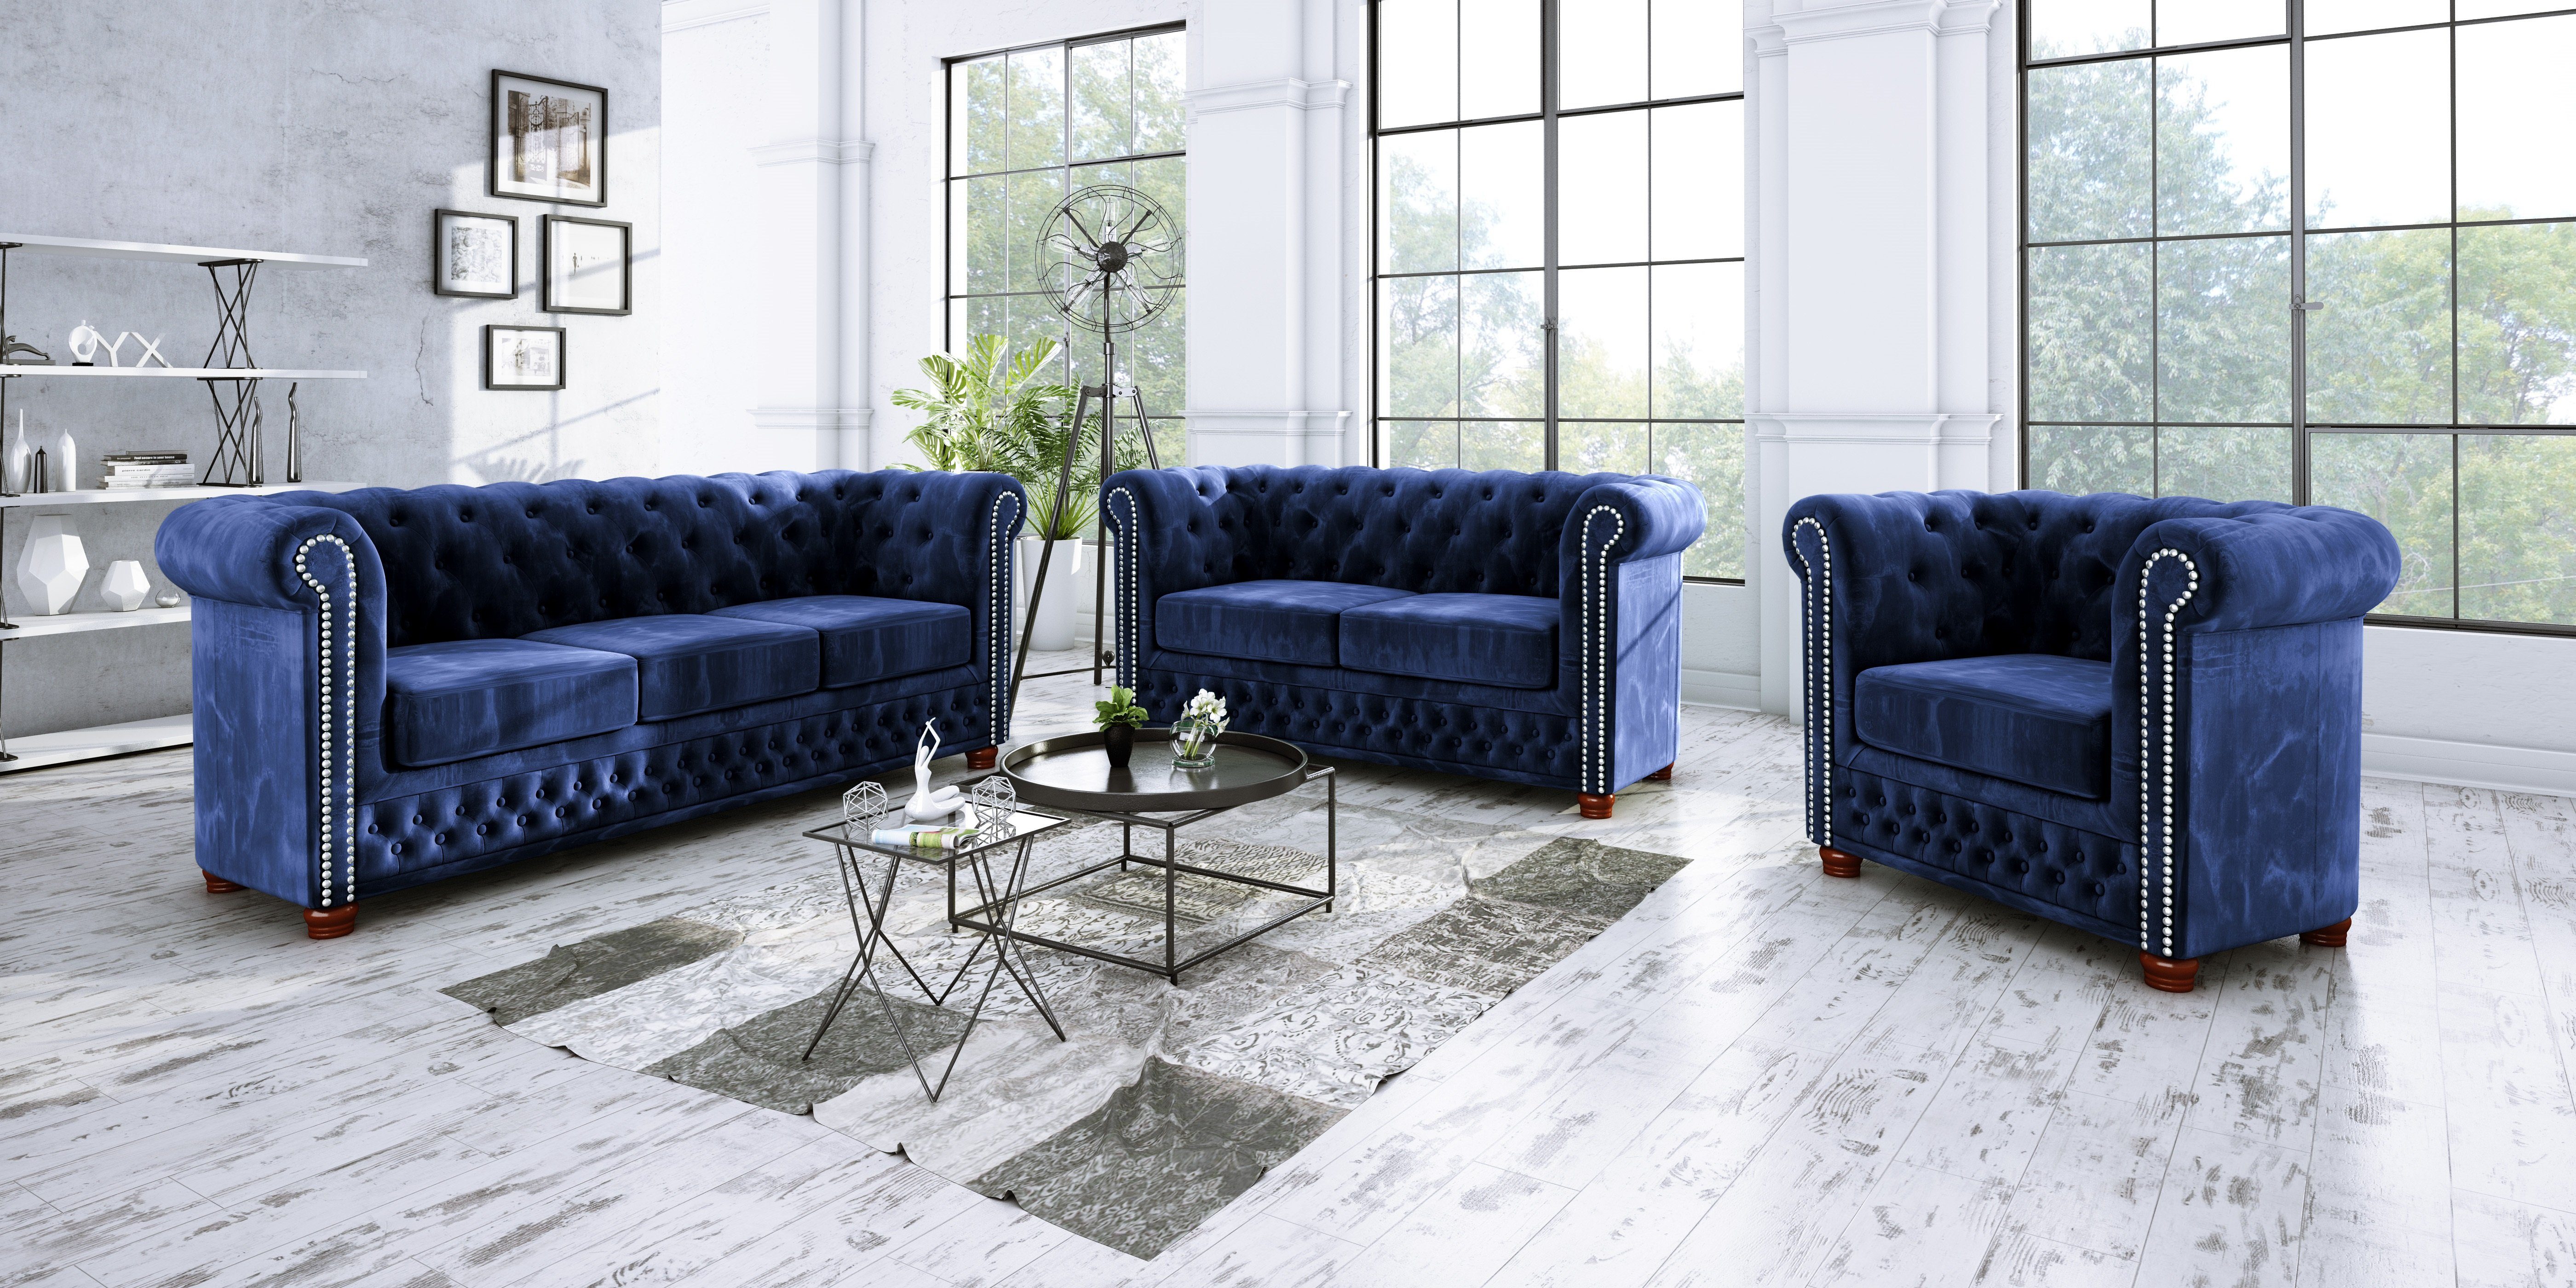 2-Sitzer Sofa, Chesterfield Marineblau S-Style Wellenfederung Möbel Leeds mit